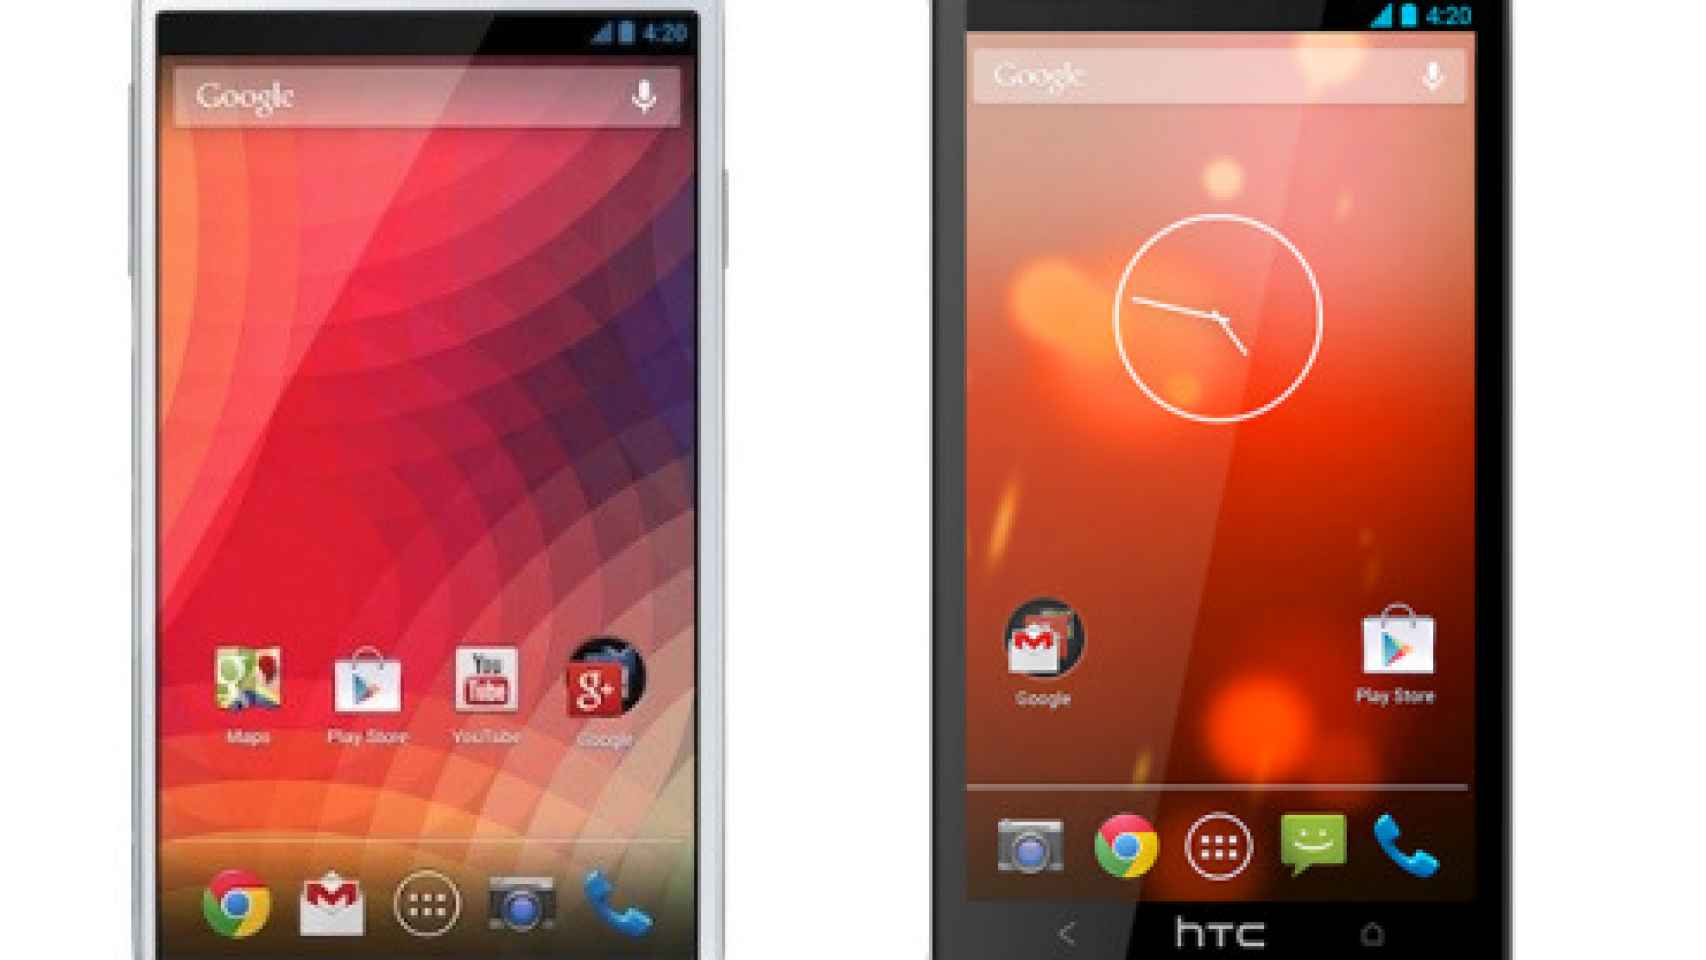 ¿Samsung Galaxy S4 con Google Edition o HTC One Nexus Experiencie? ¿Cual prefieres?